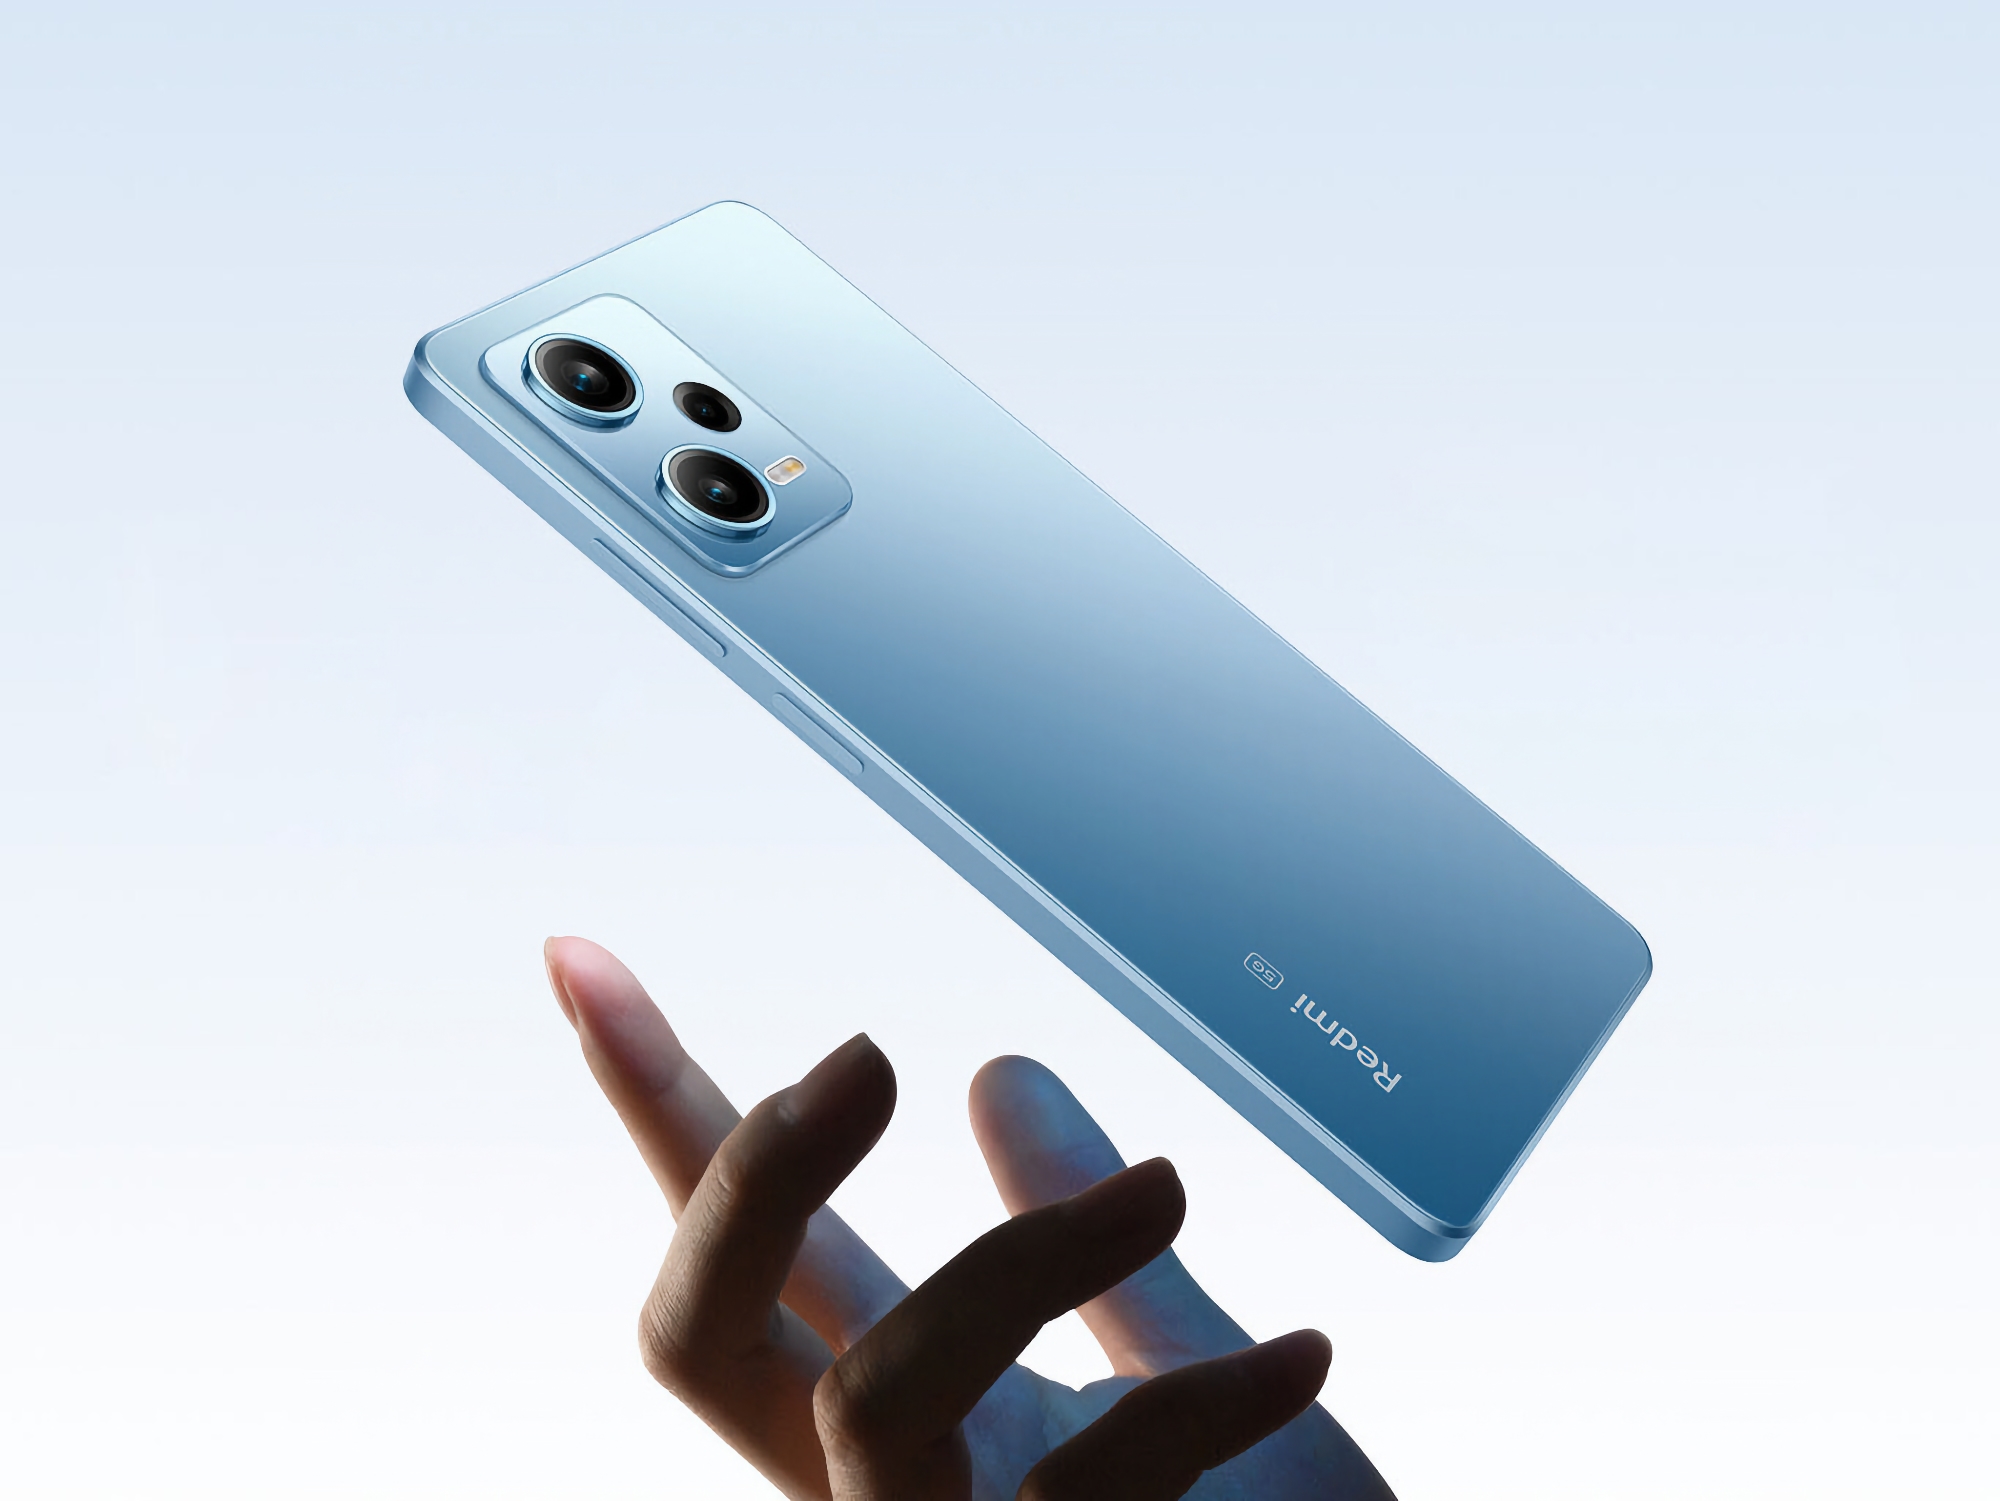 Ankündigung nah: Xiaomi startet Teaser-Release des Redmi Note 12 Turbo Smartphones mit Snapdragon 7+ Gen 2 Chip